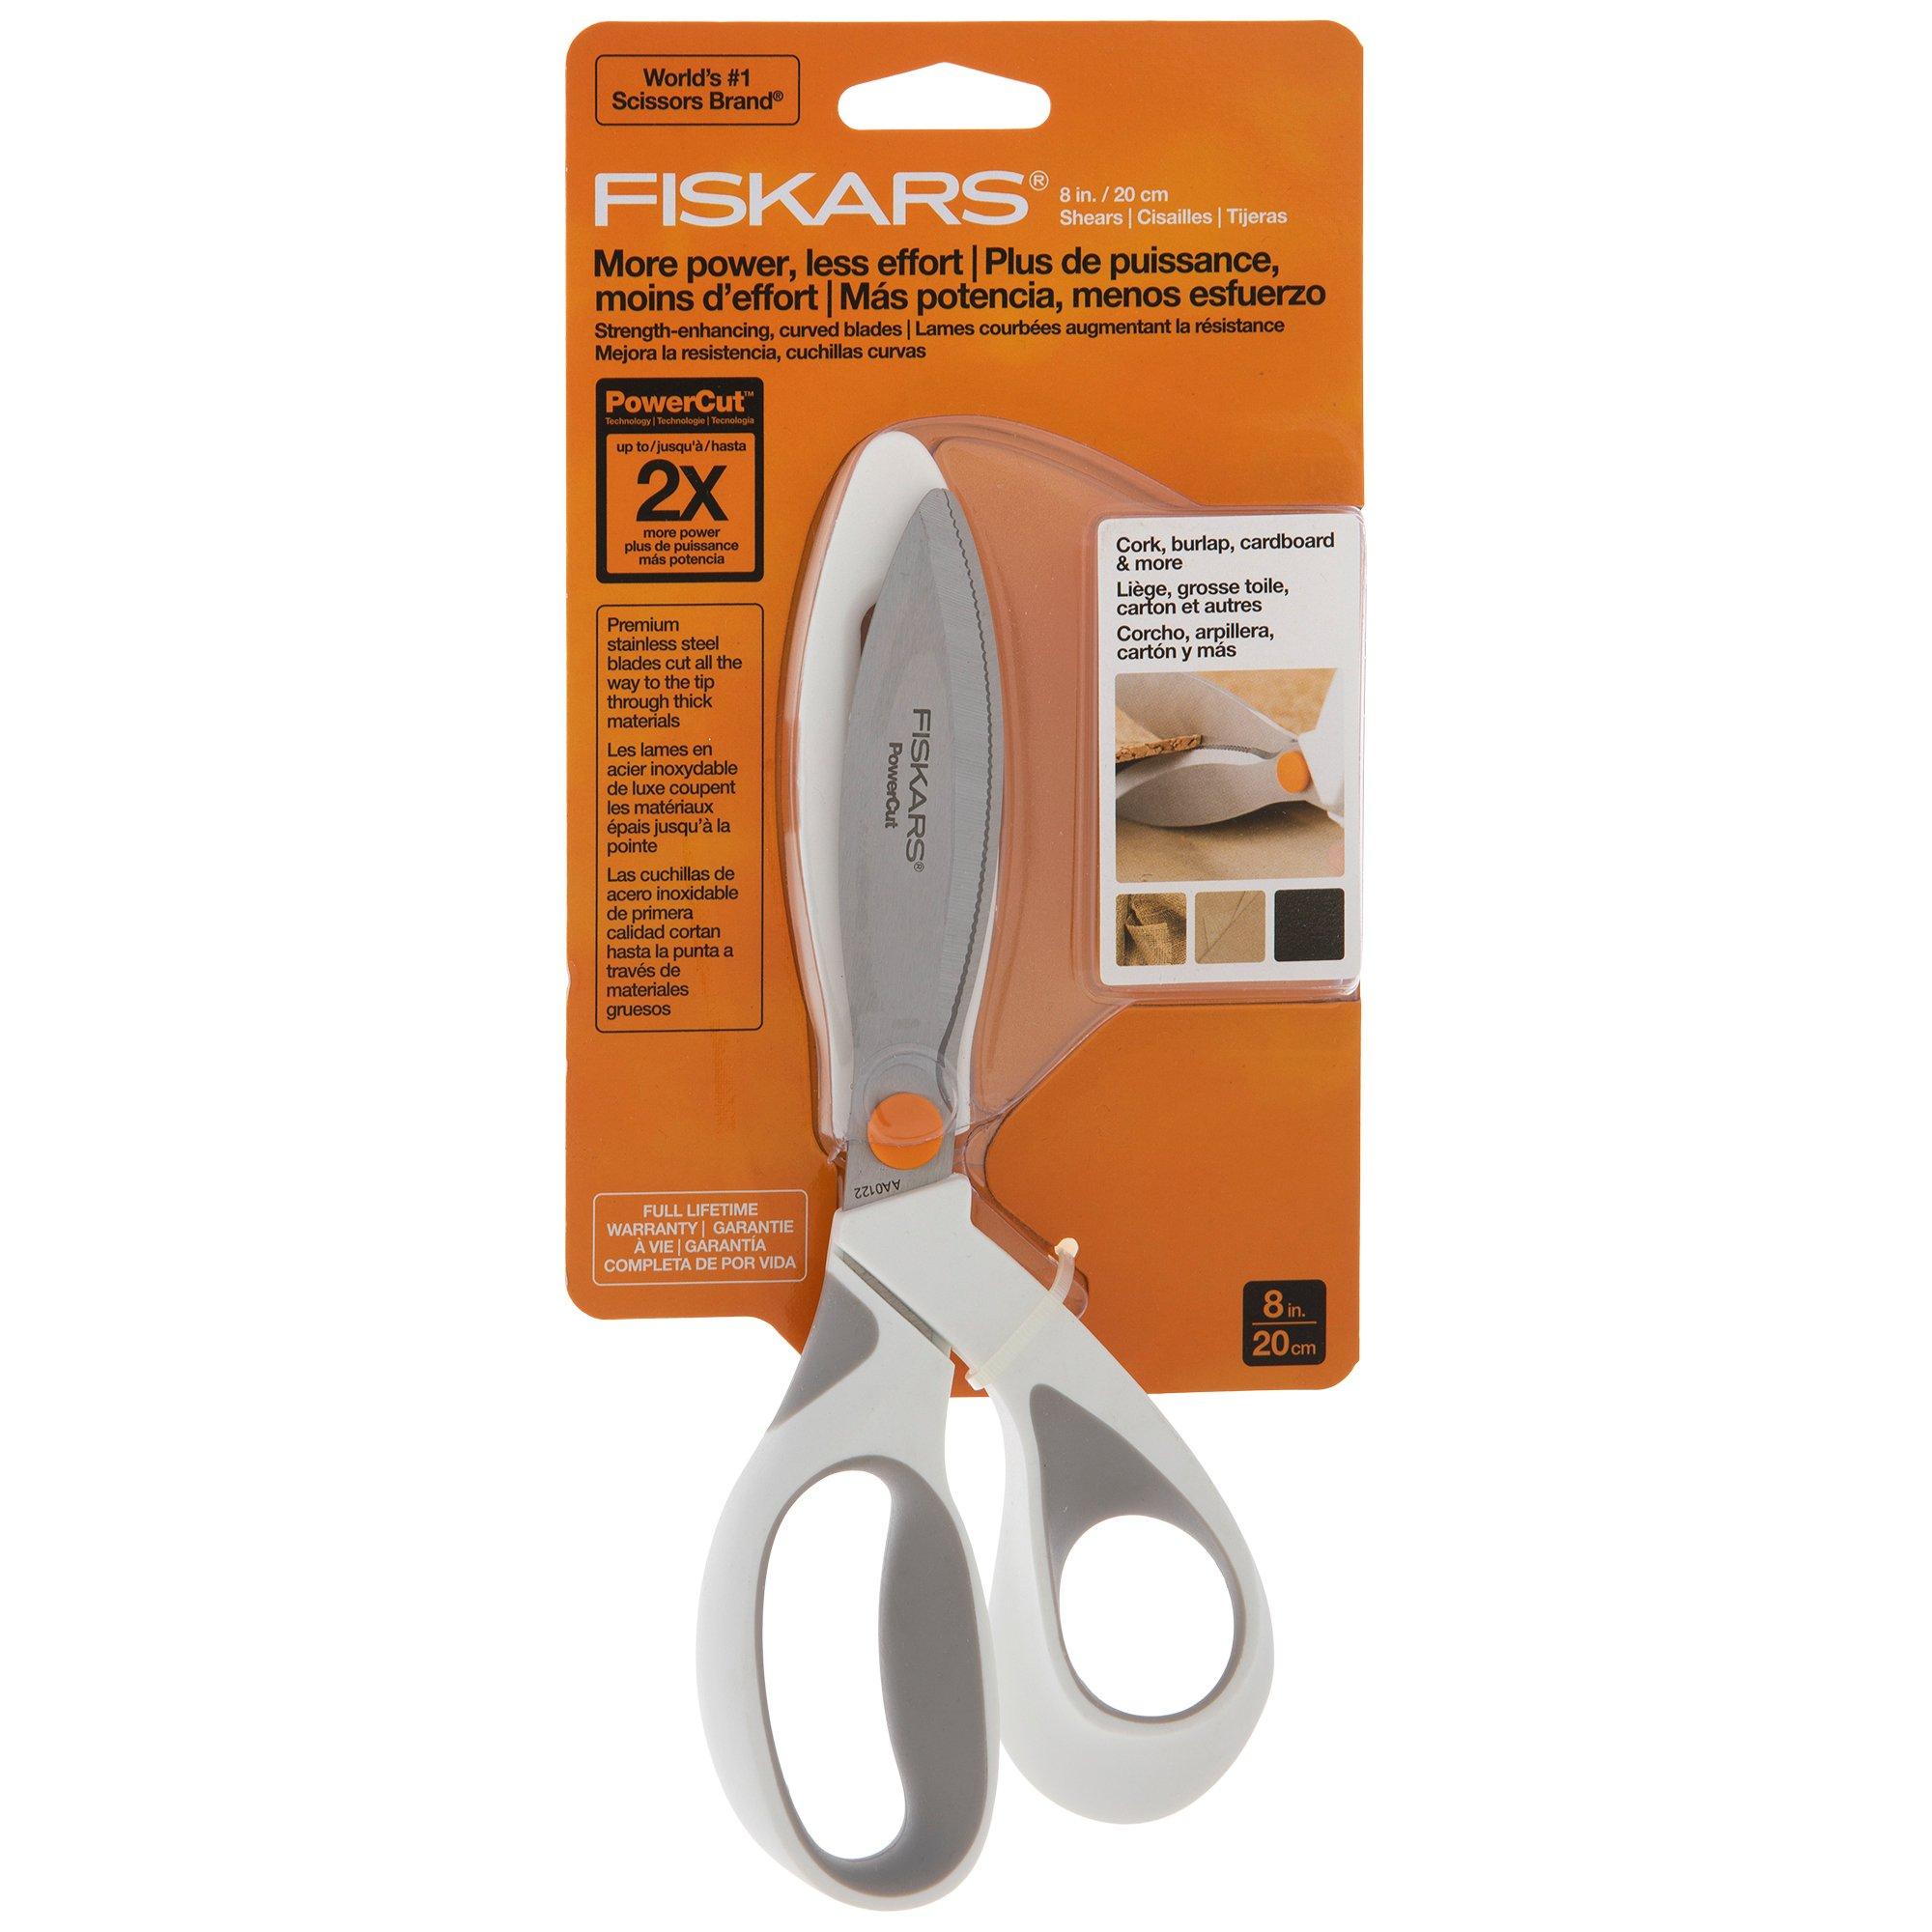 Fiskars 8 Amplify Mixed Media Scissors